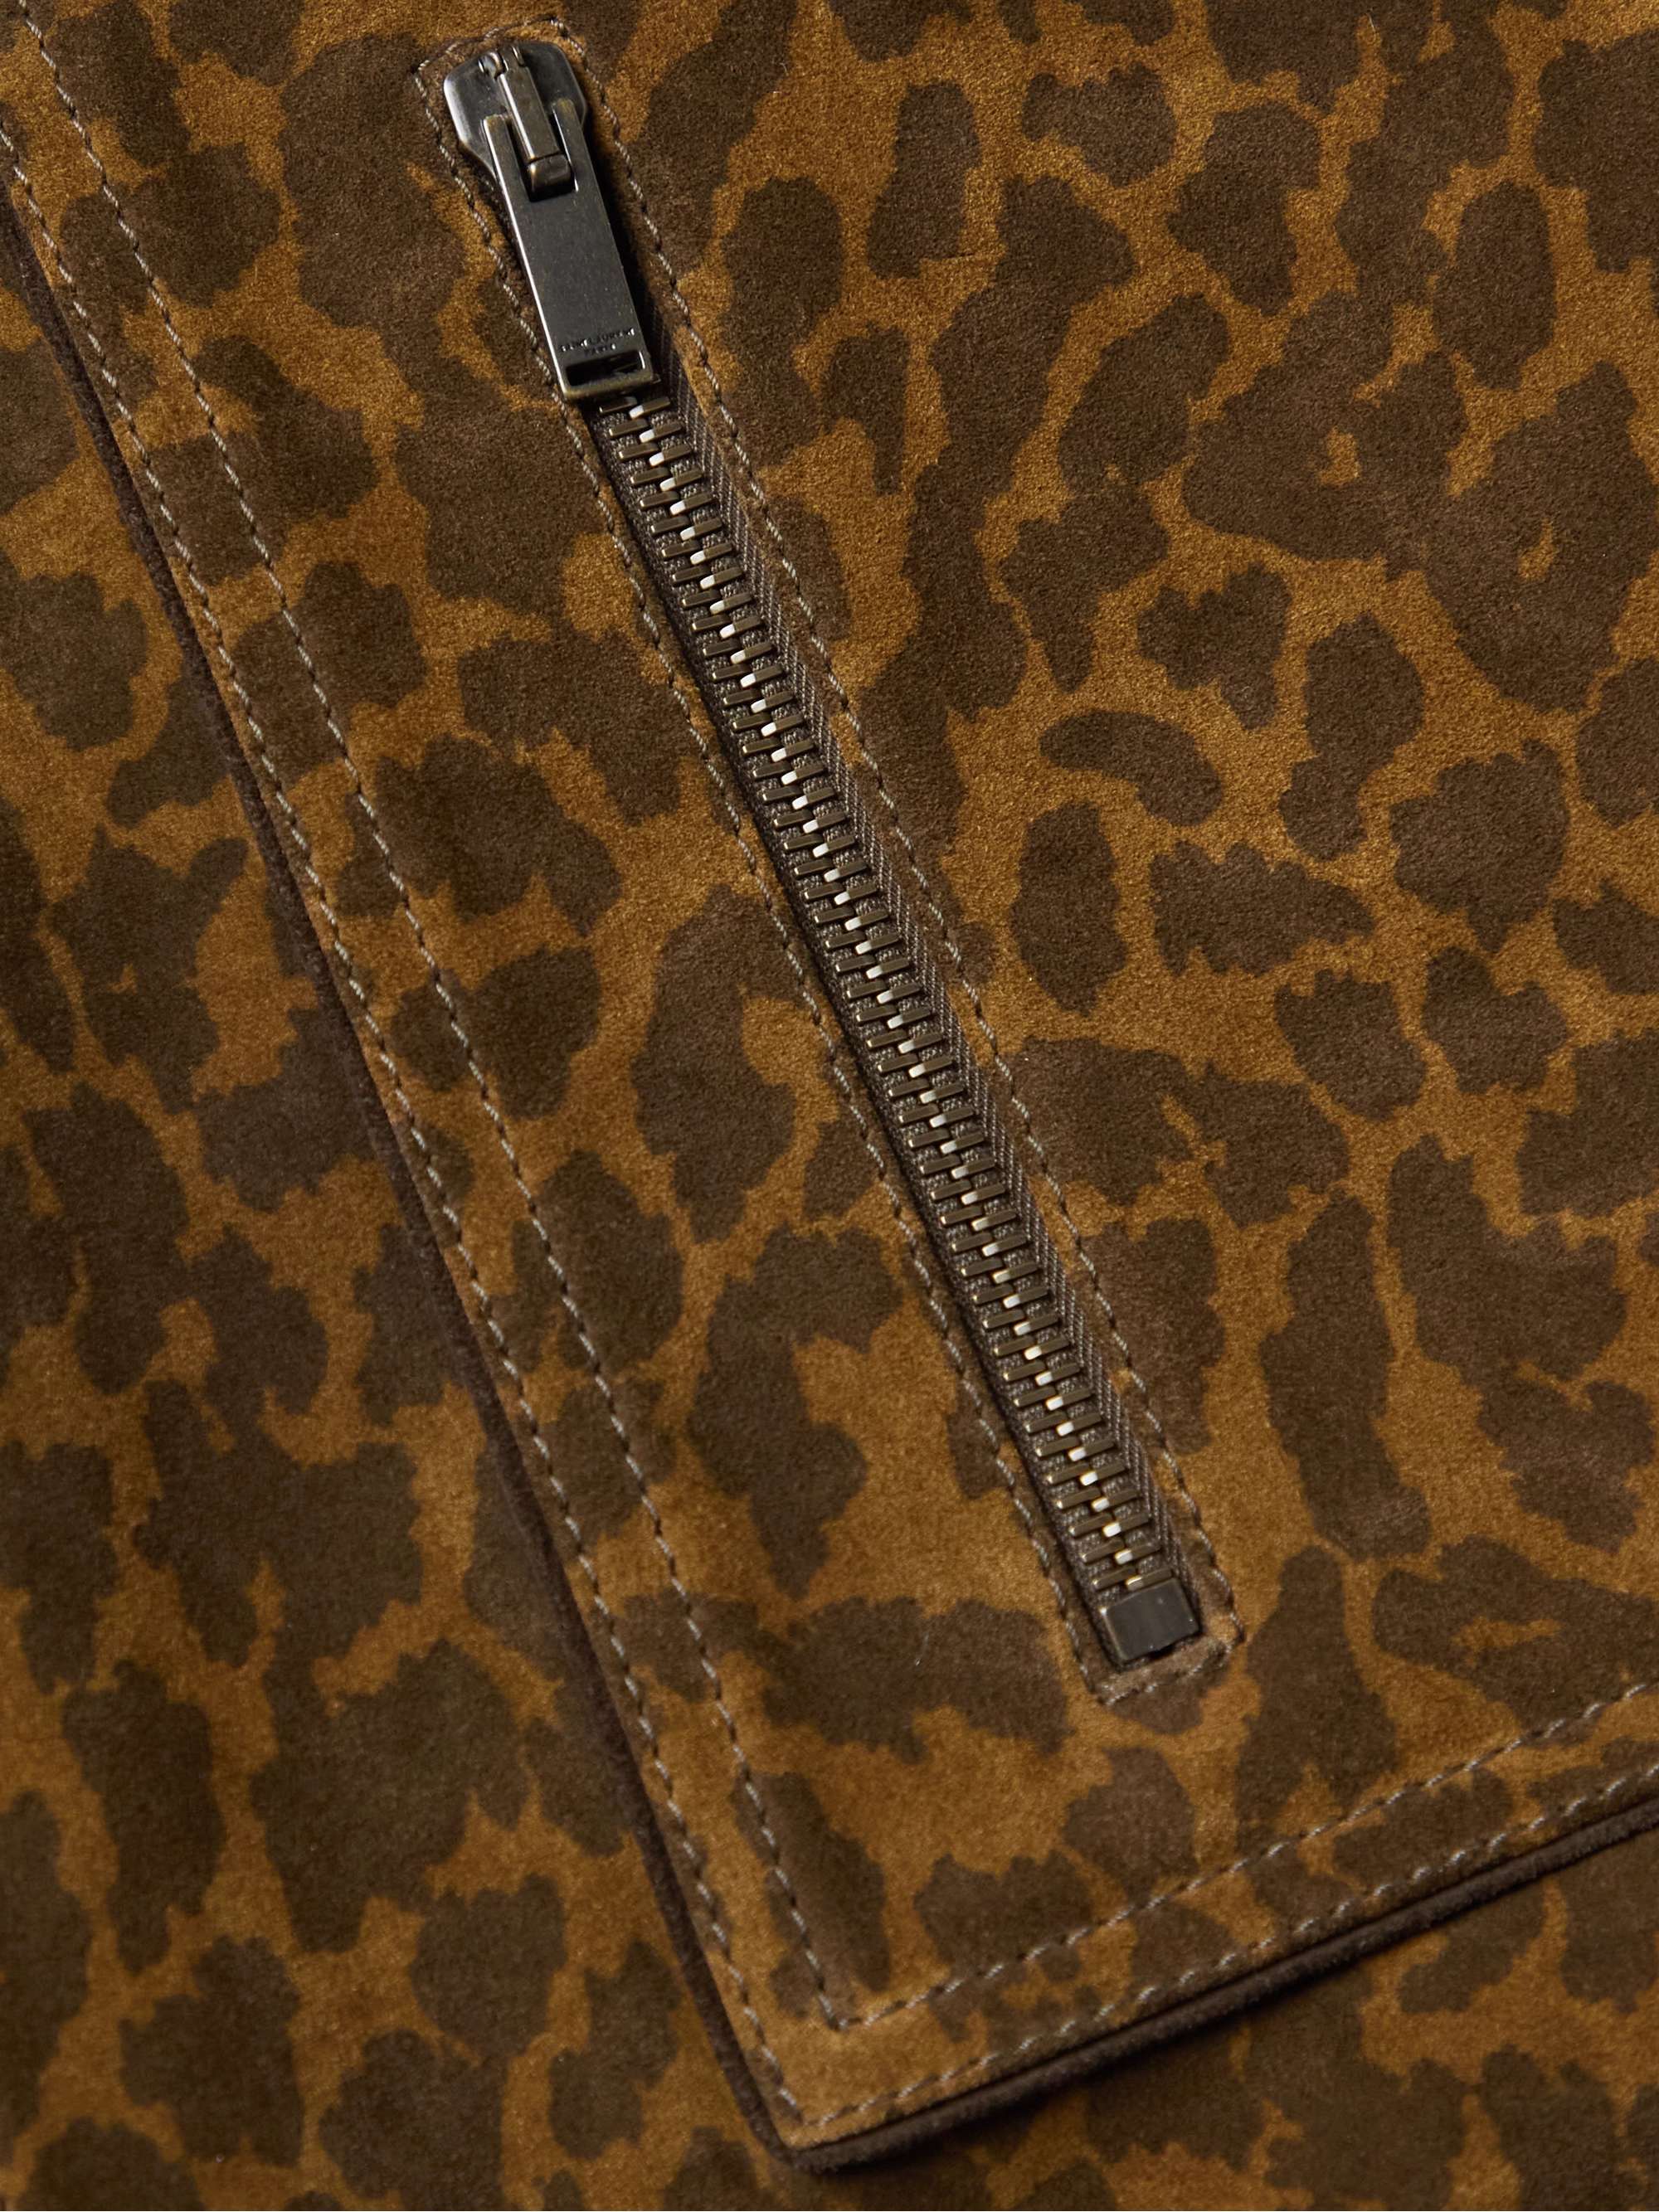 SAINT LAURENT Leopard-Print Suede Jacket